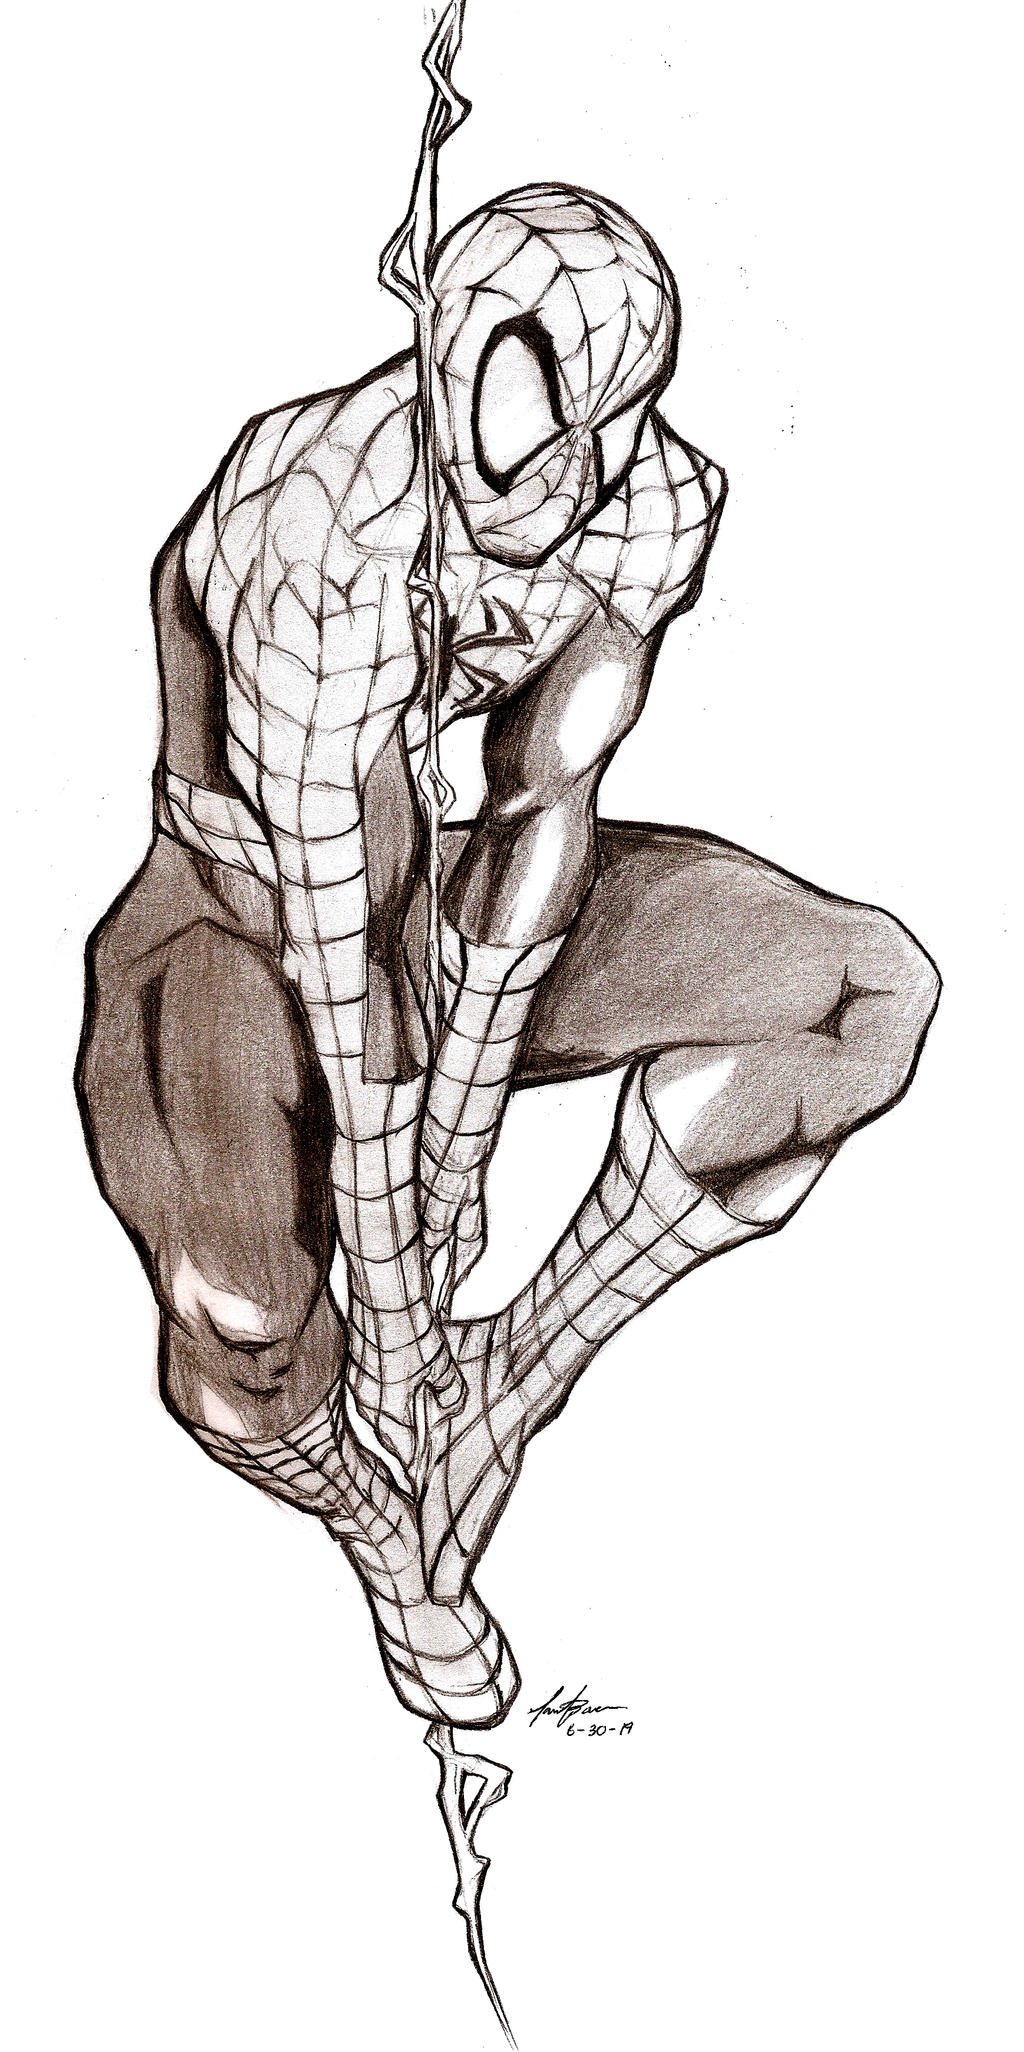 Spider-man in web